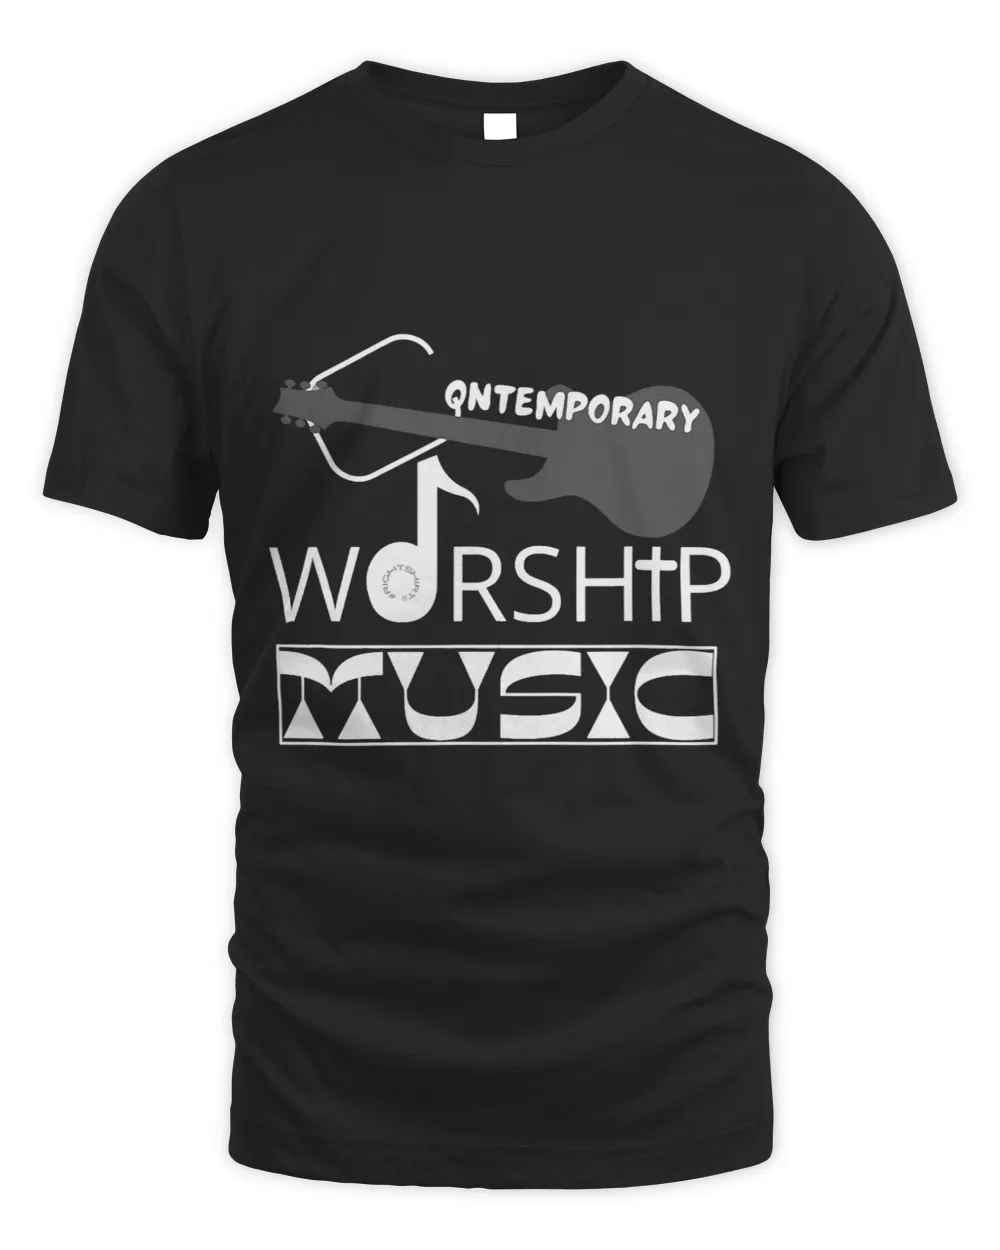 Christian CONTEMPORARY WORSHIP MUSIC Christian Faith